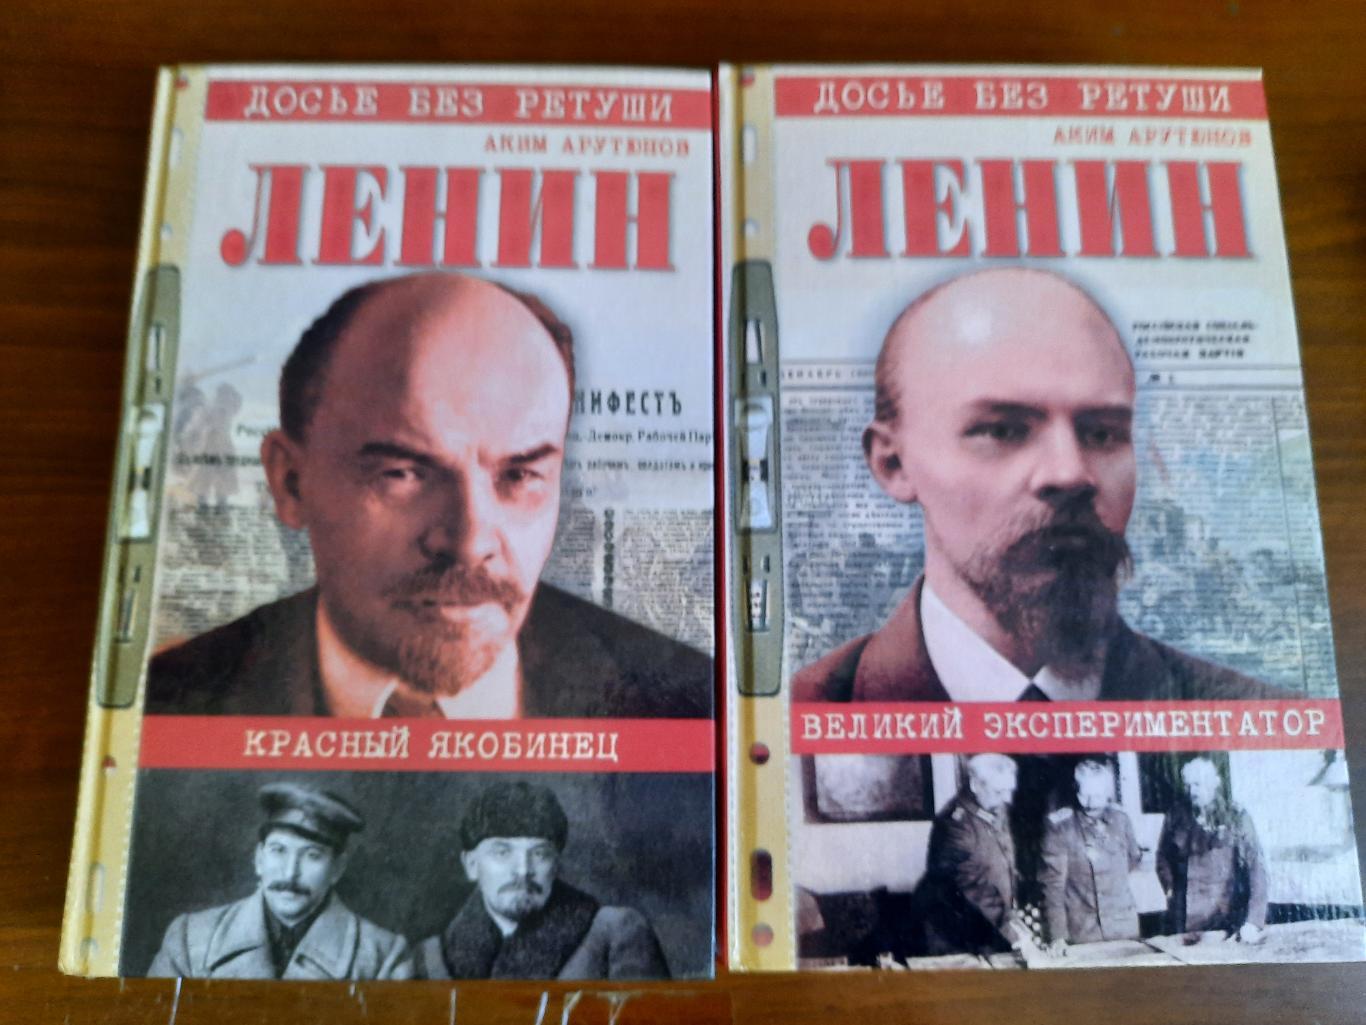 Аким Арутюнов. Ленин (два тома) Красный якобинец Великий экспериментатор